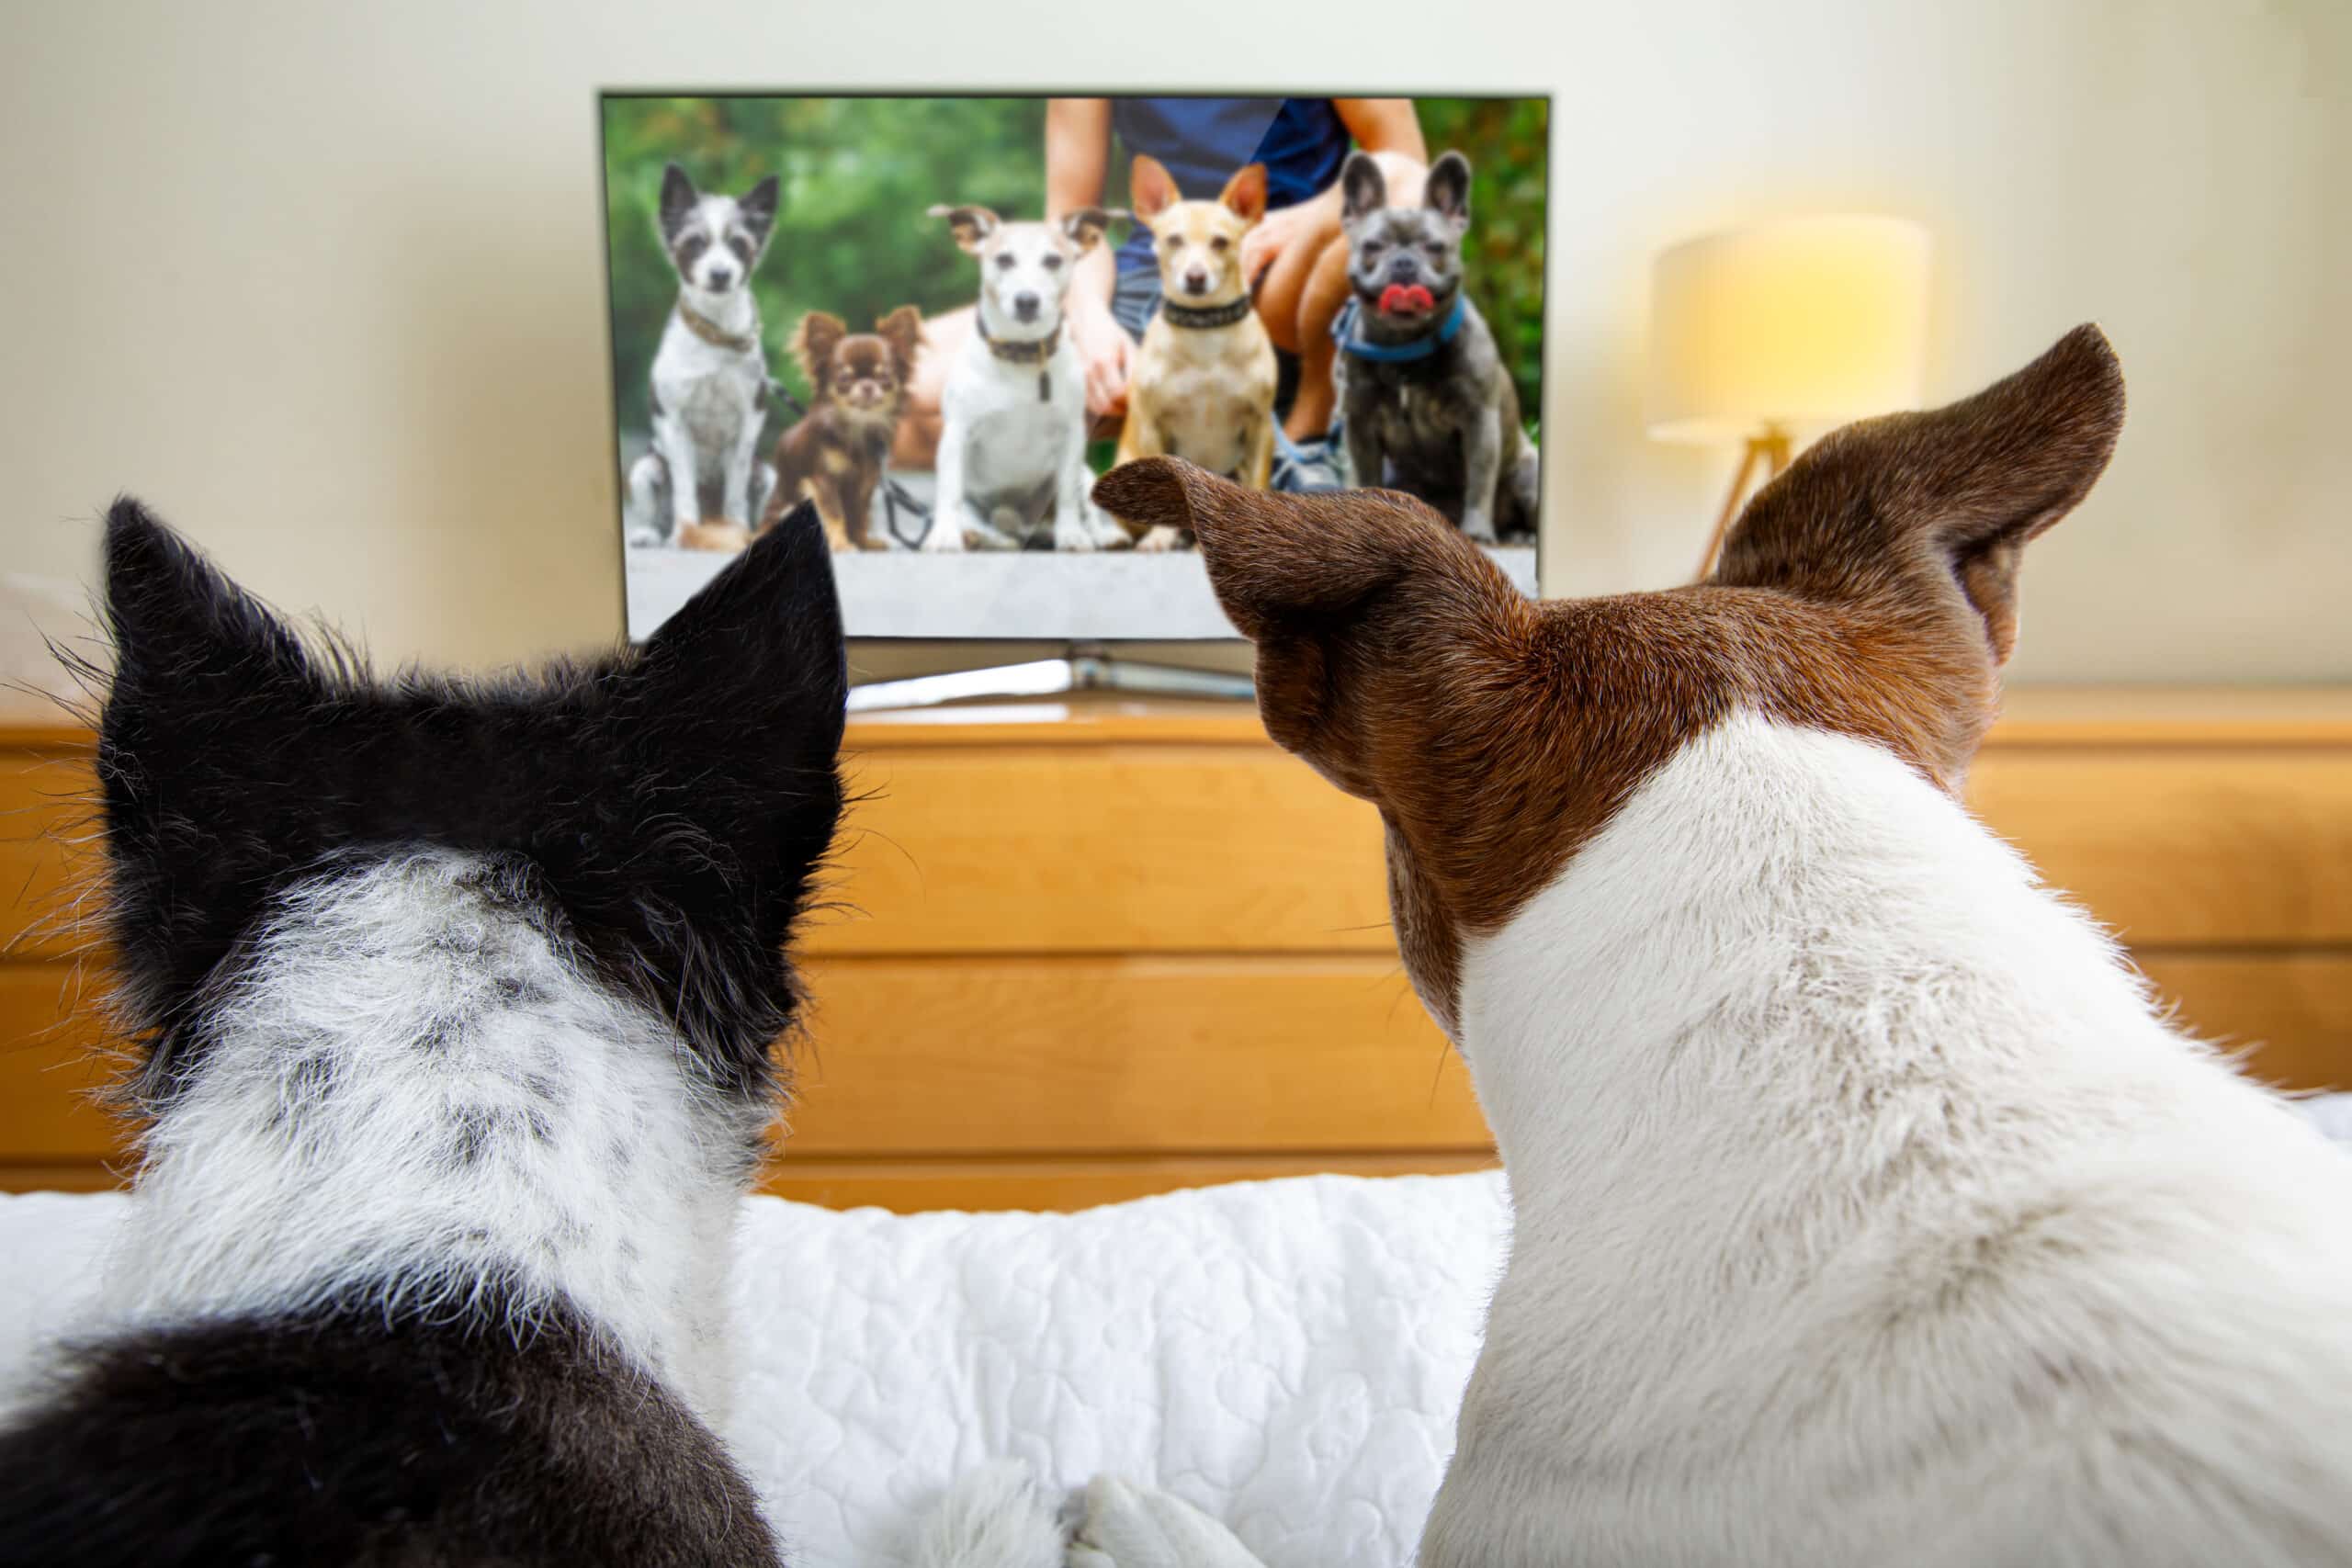 Onderzoek naar wat honden het liefst zien op tv kan dierenartsen helpen hun gezichtsvermogen te beoordelen